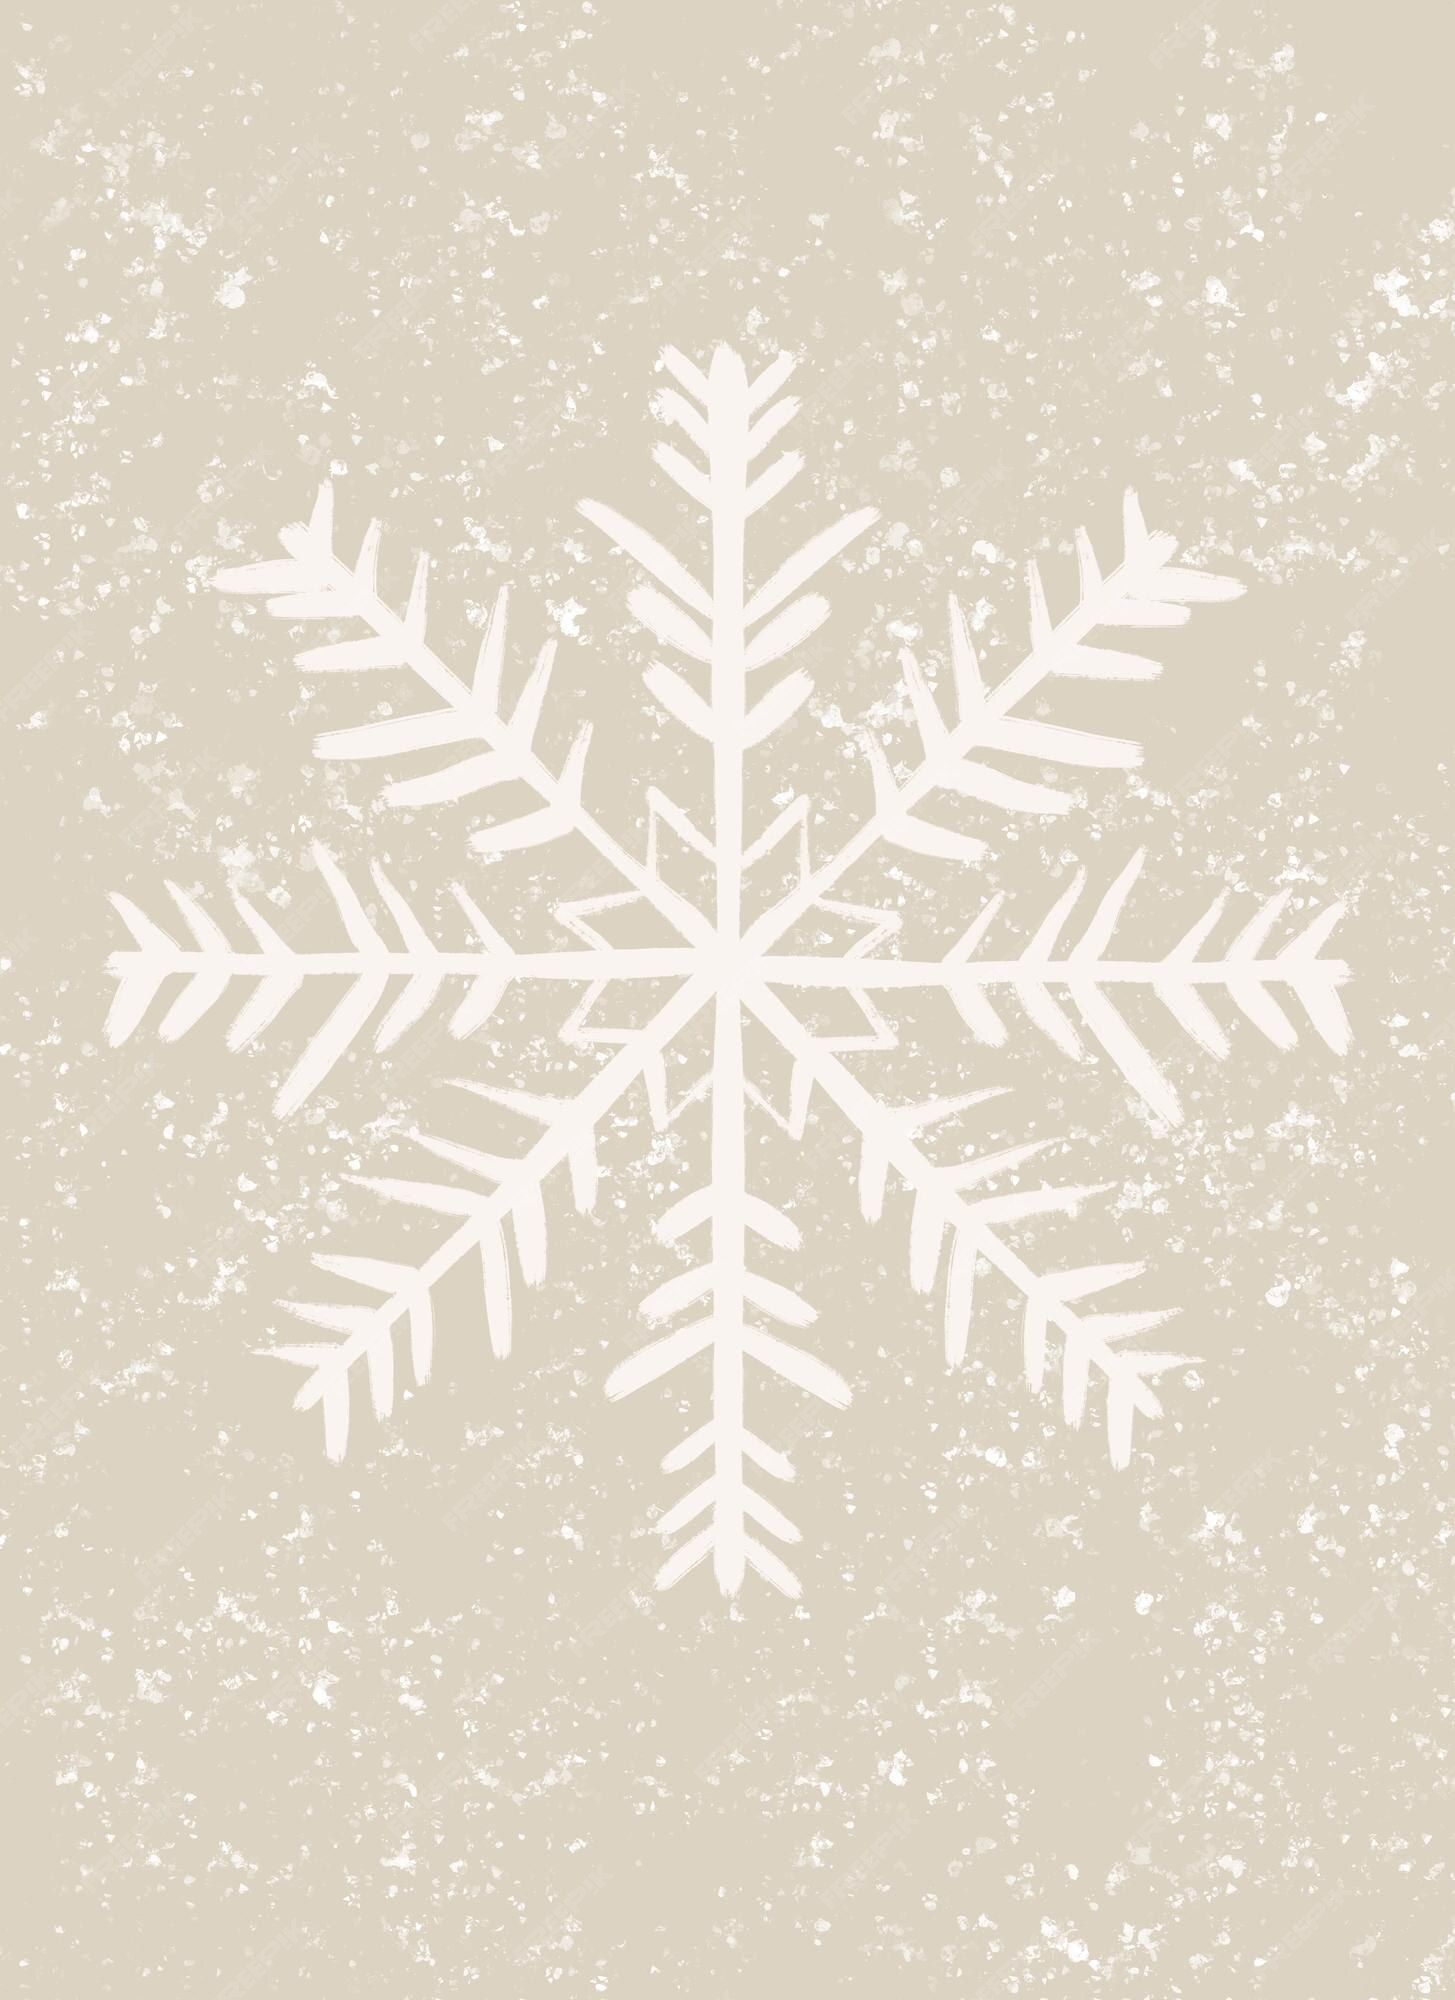 Snowflake Design Picture